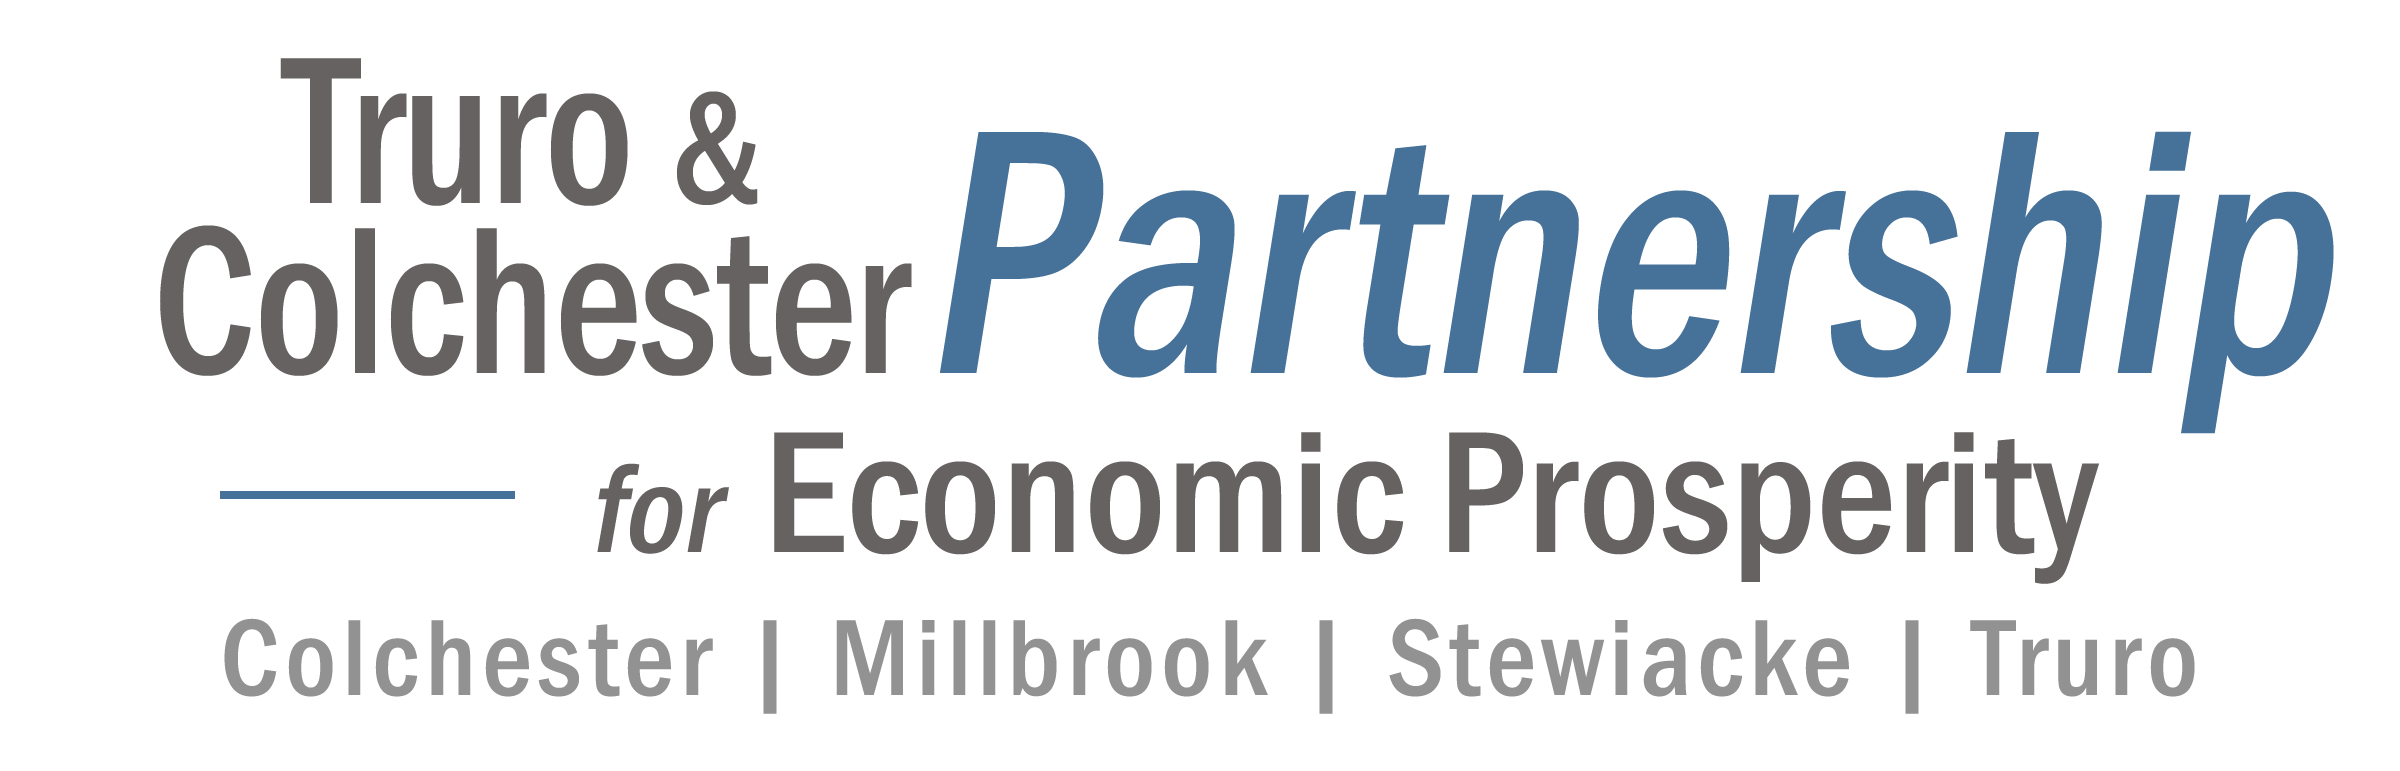 Truro & Colchester Partnership for Economic Prosperity